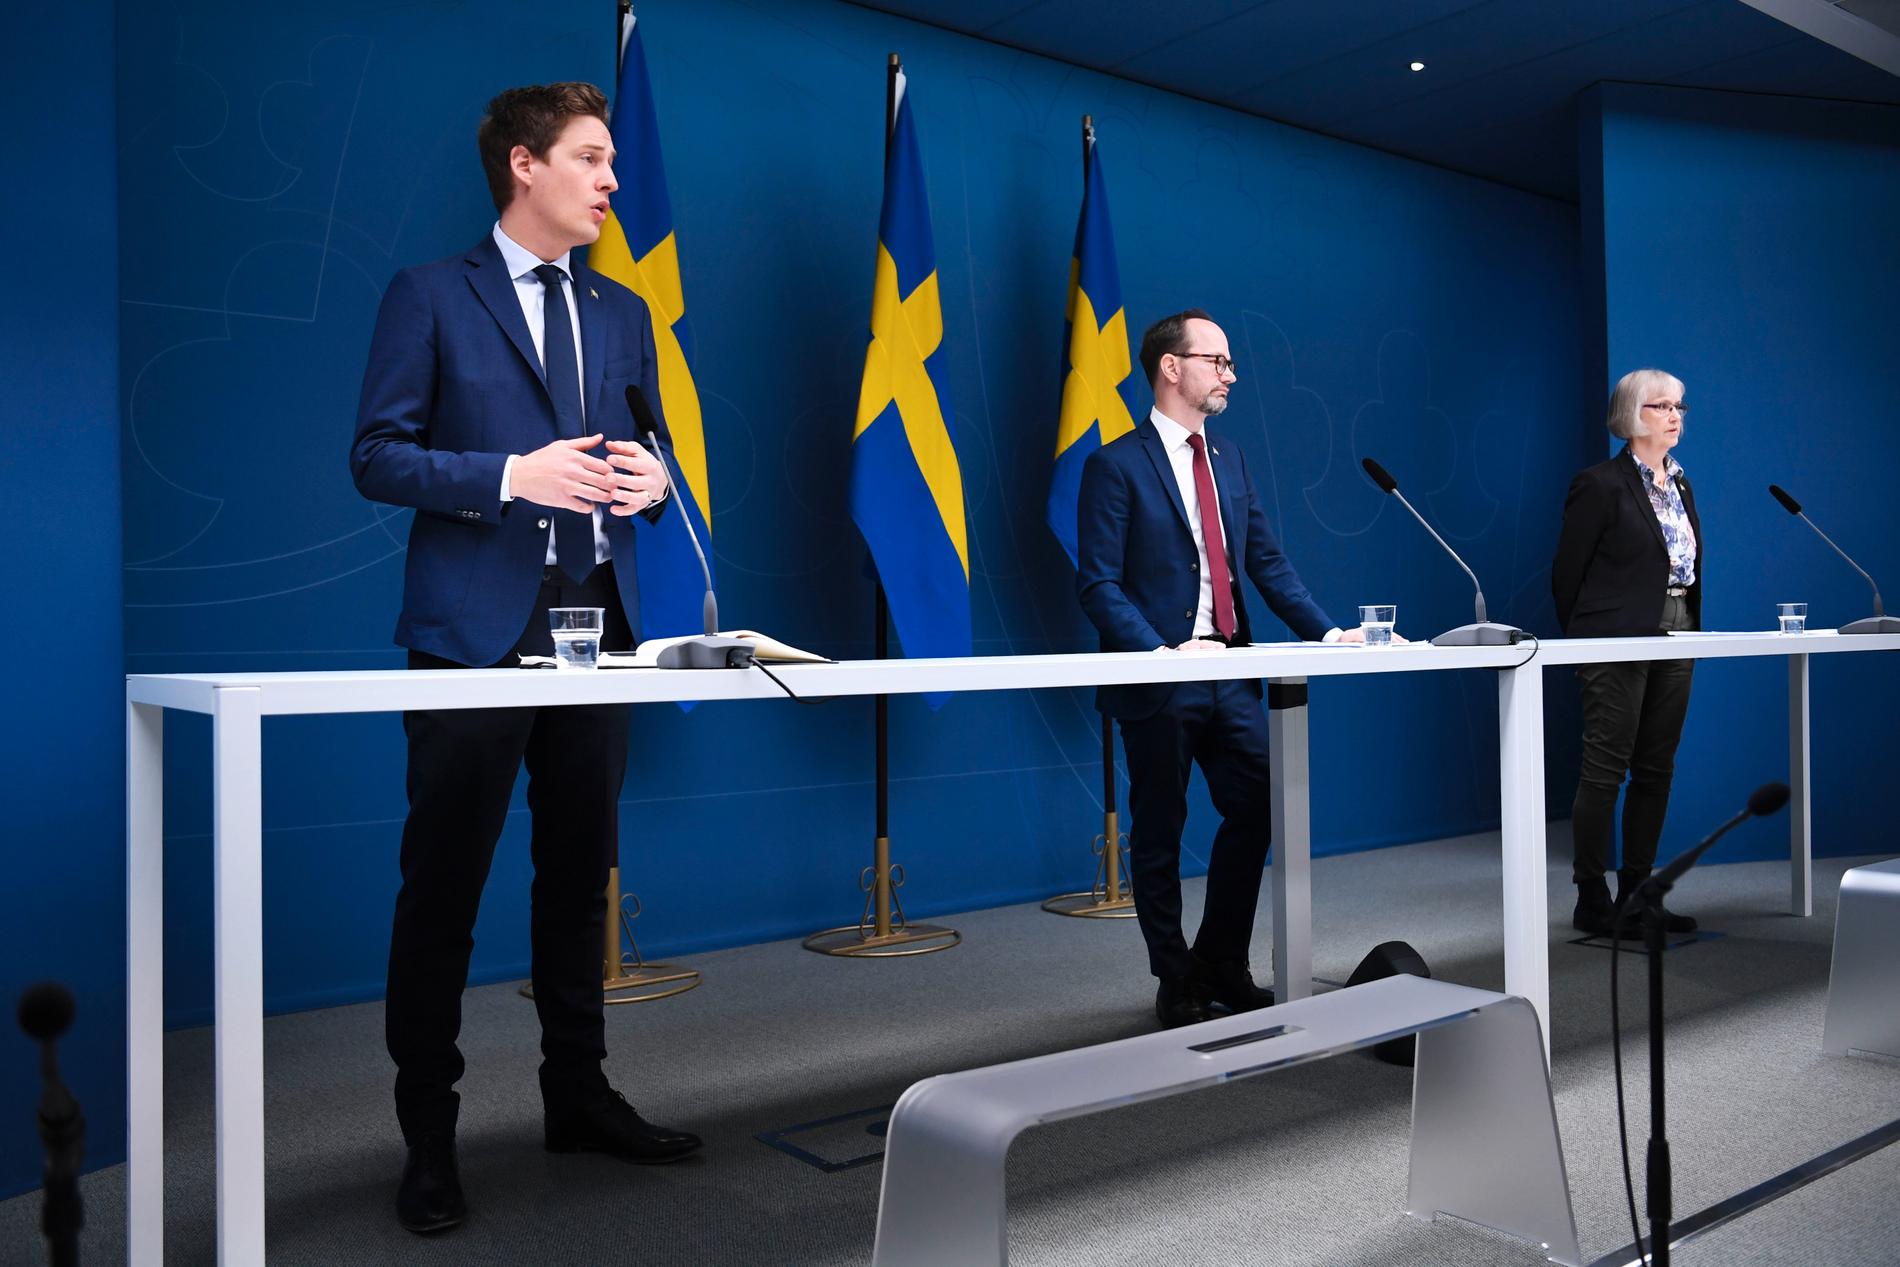 Centerpartiets ekonomisk-politisk talesperson Emil Källström, infrastrukturminister Tomas Eneroth (S) och Trafikverkets generaldirektör Lena Erixon.